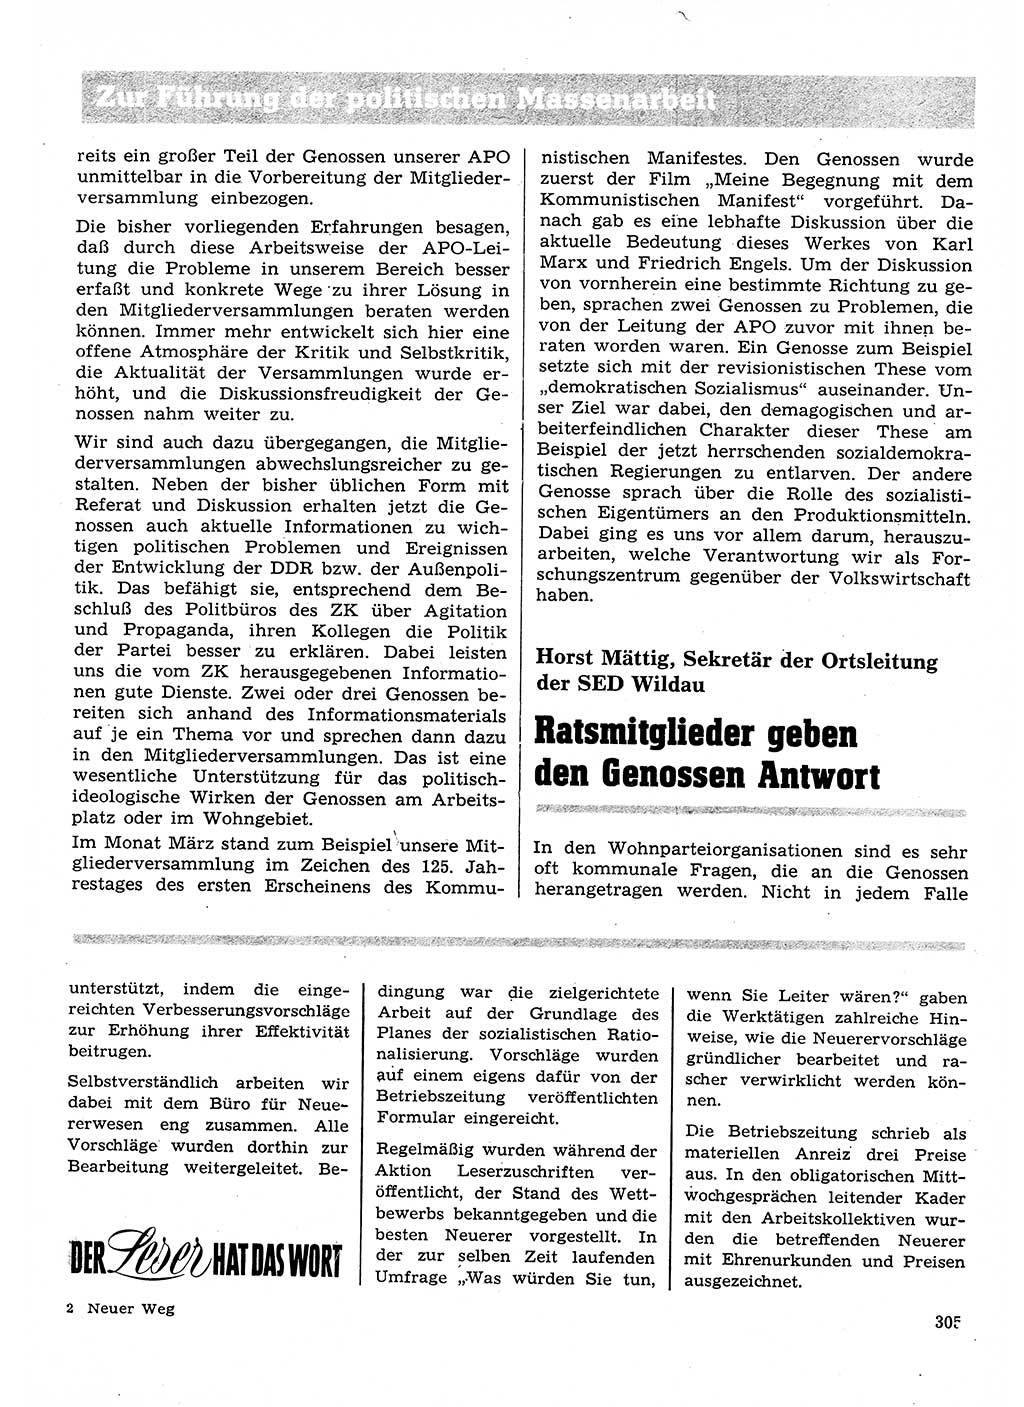 Neuer Weg (NW), Organ des Zentralkomitees (ZK) der SED (Sozialistische Einheitspartei Deutschlands) für Fragen des Parteilebens, 28. Jahrgang [Deutsche Demokratische Republik (DDR)] 1973, Seite 305 (NW ZK SED DDR 1973, S. 305)